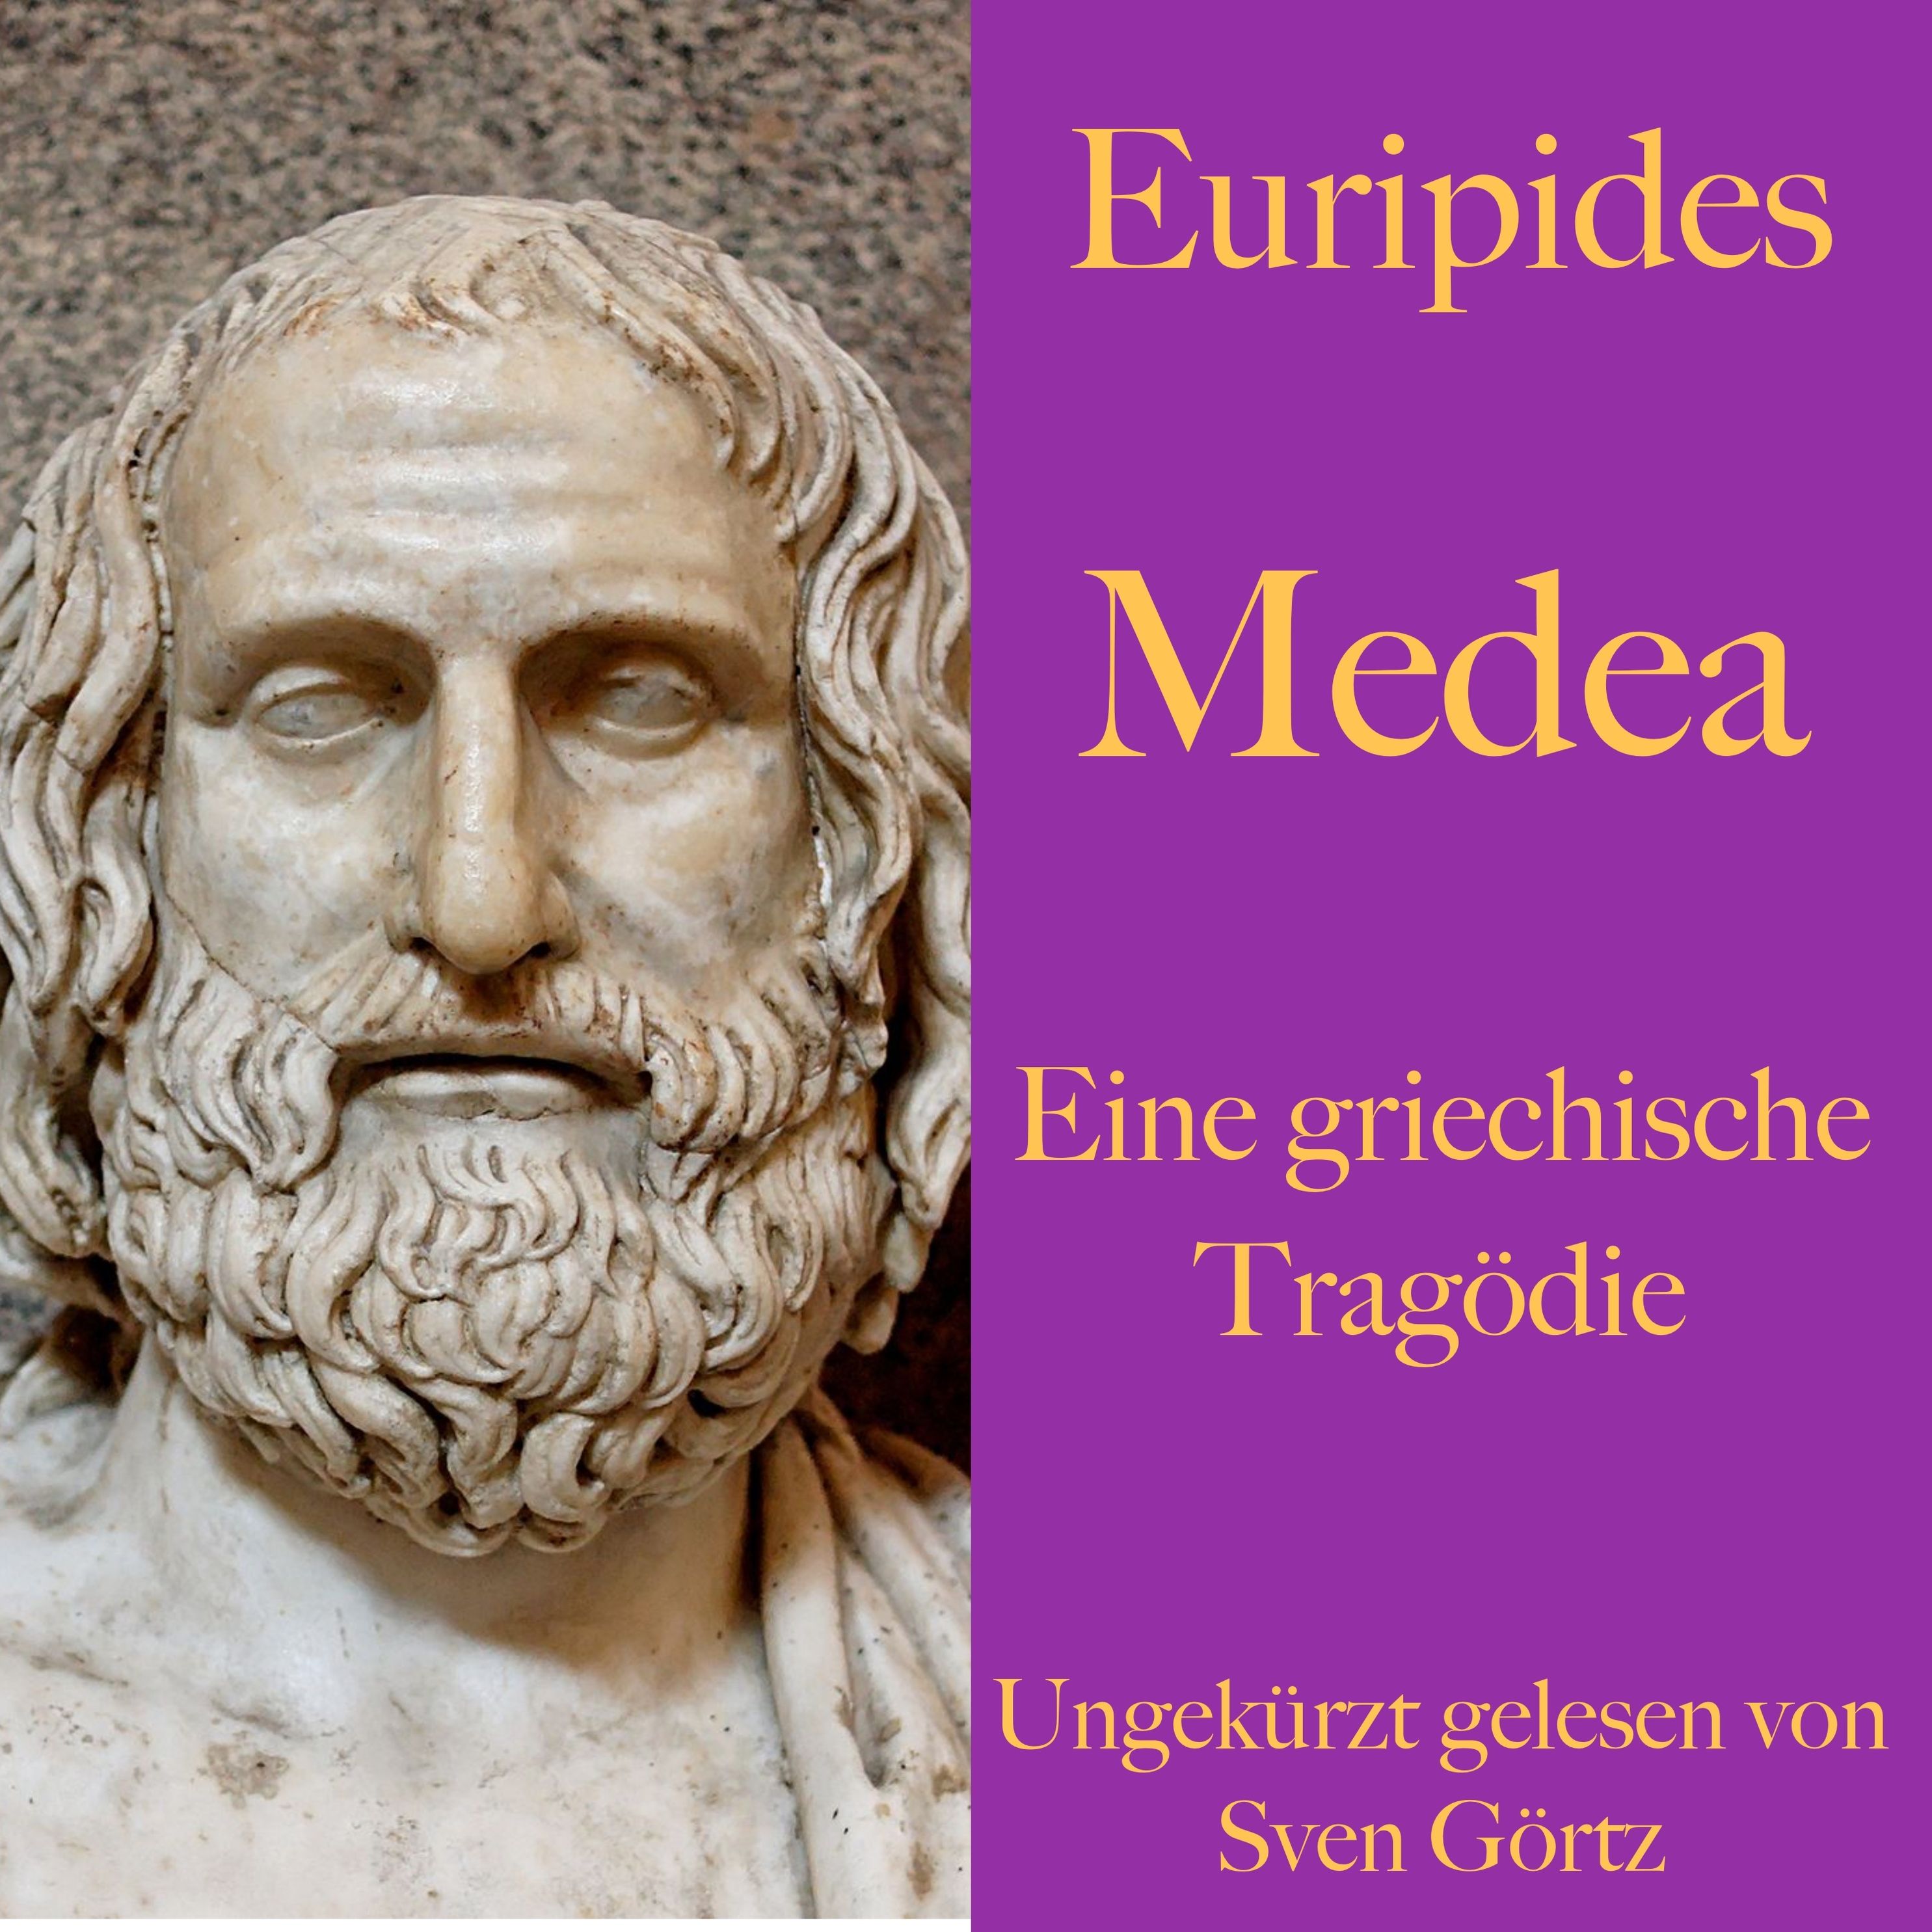 euripides-medea-308957467.jpg?v=1&wp=_max